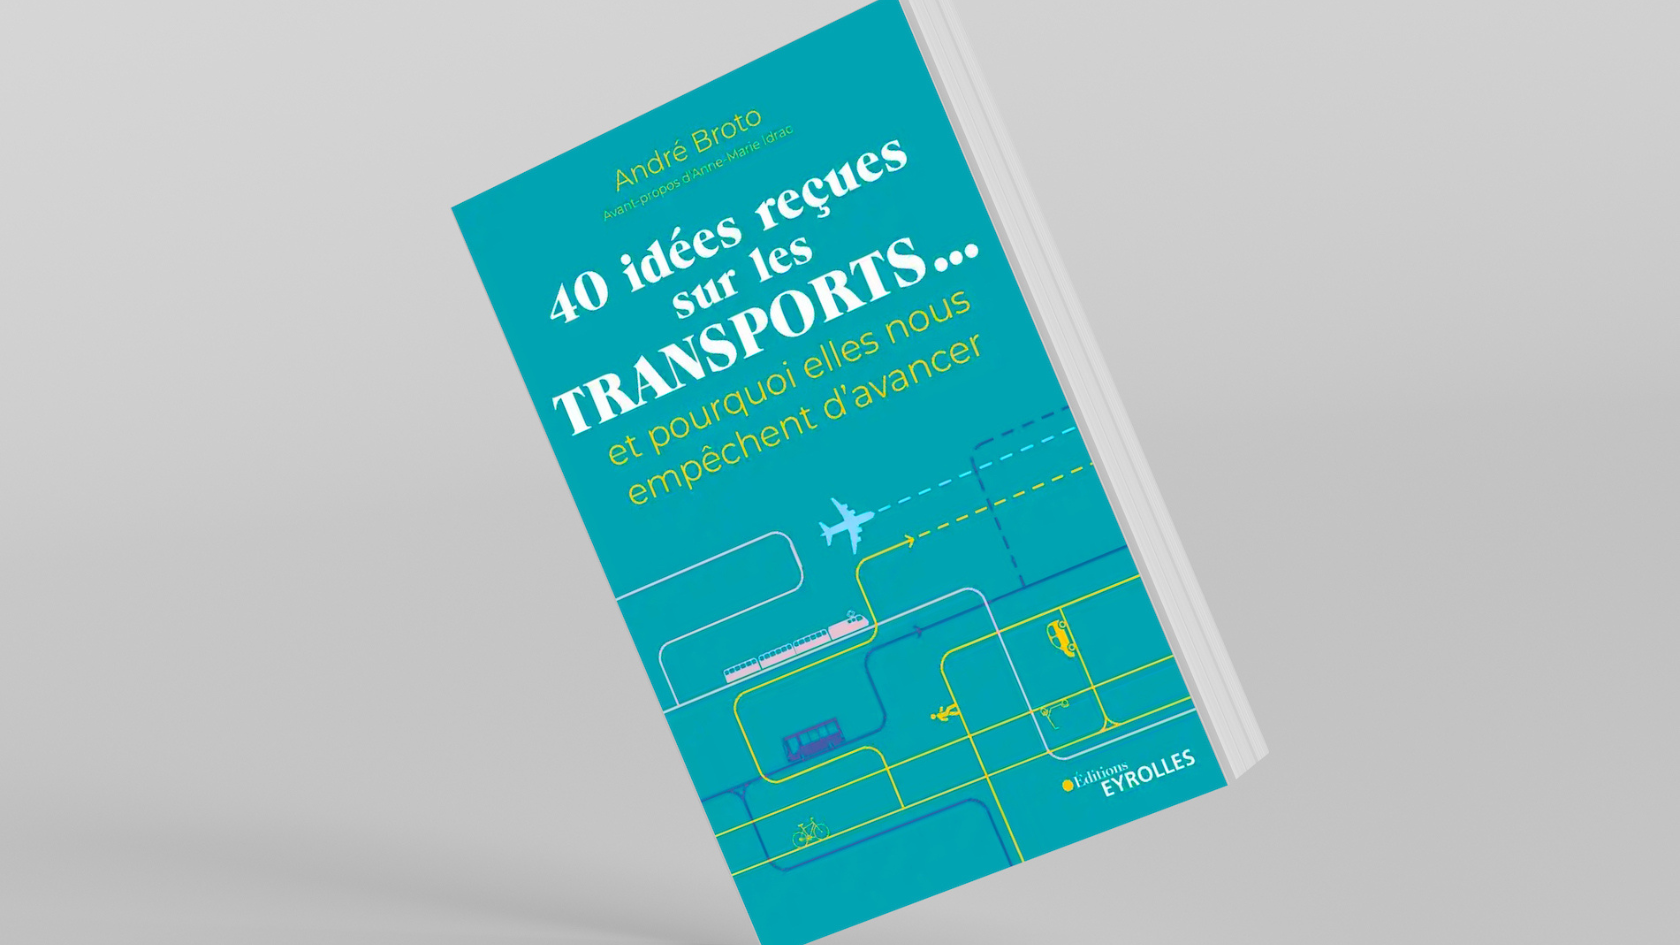 André Broto "40 idées reçues sur les transports..."